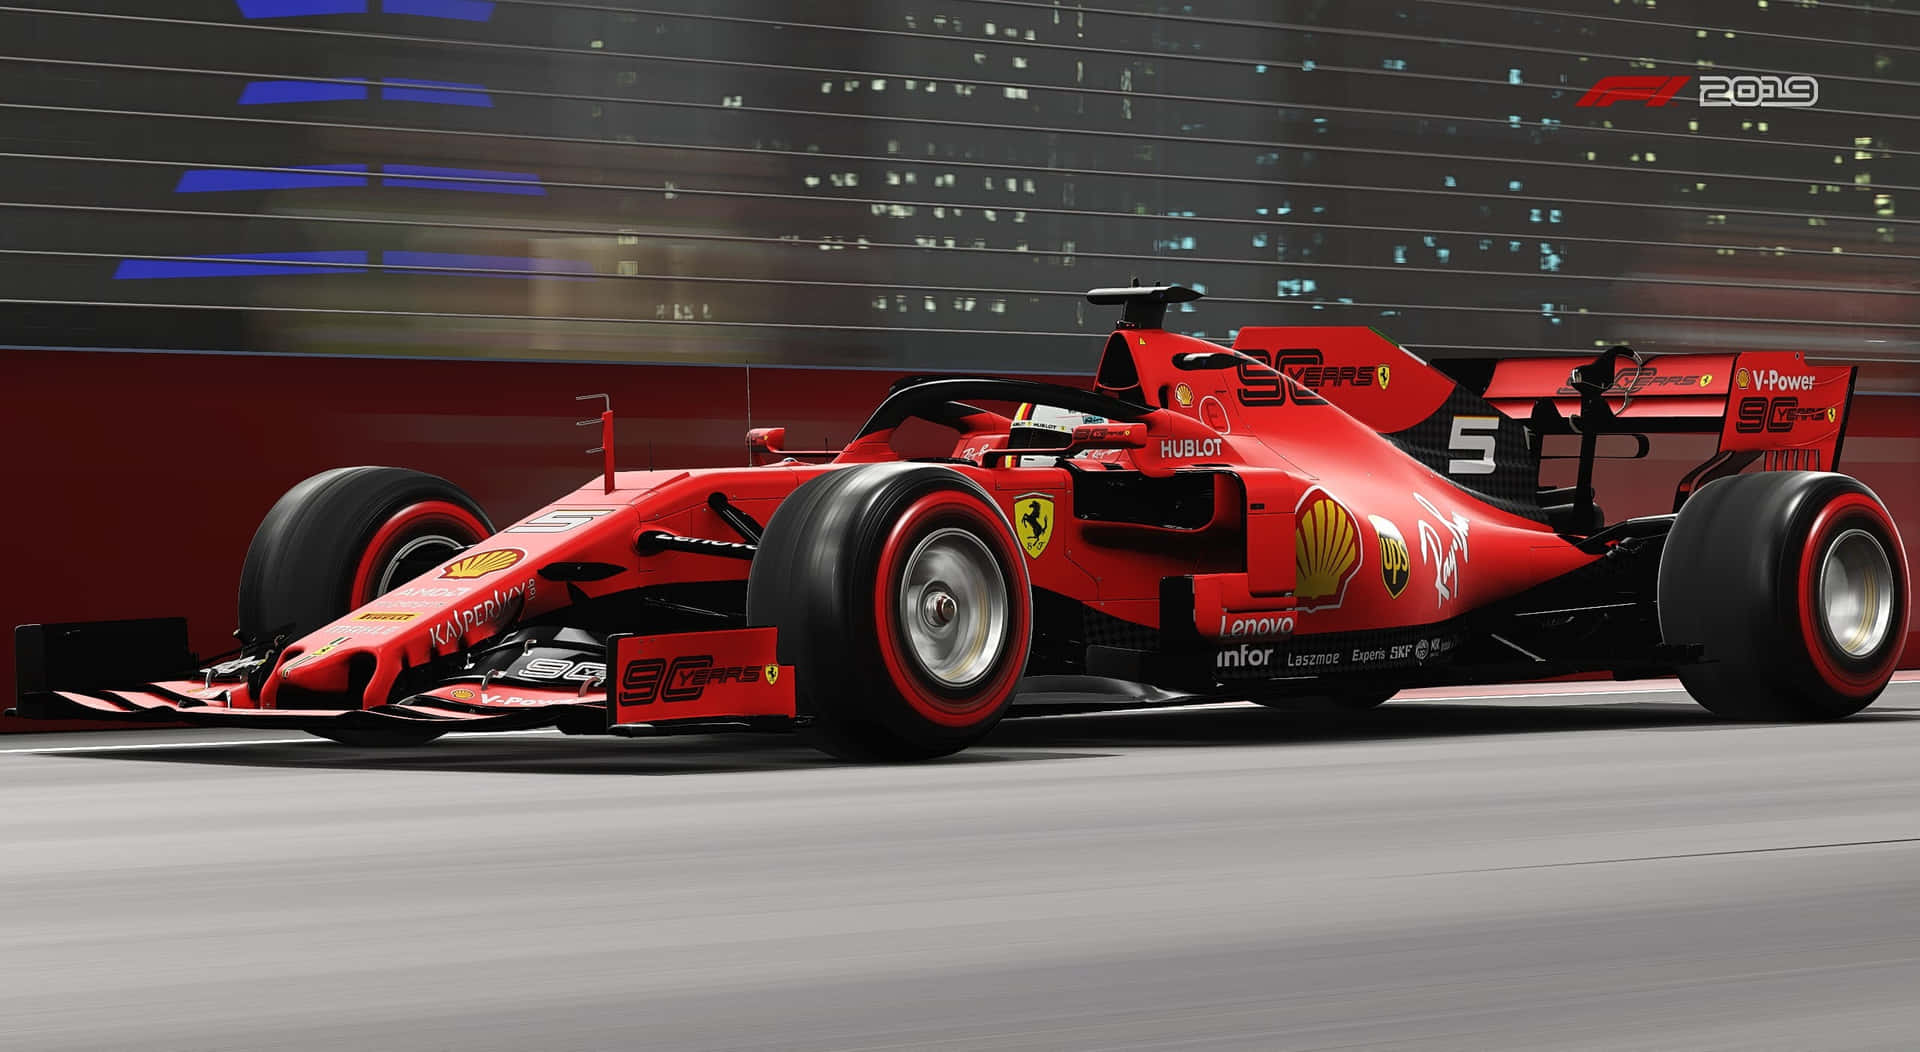 Ferrarif1-2019-förare Presenterar Sin Hastighet. Wallpaper